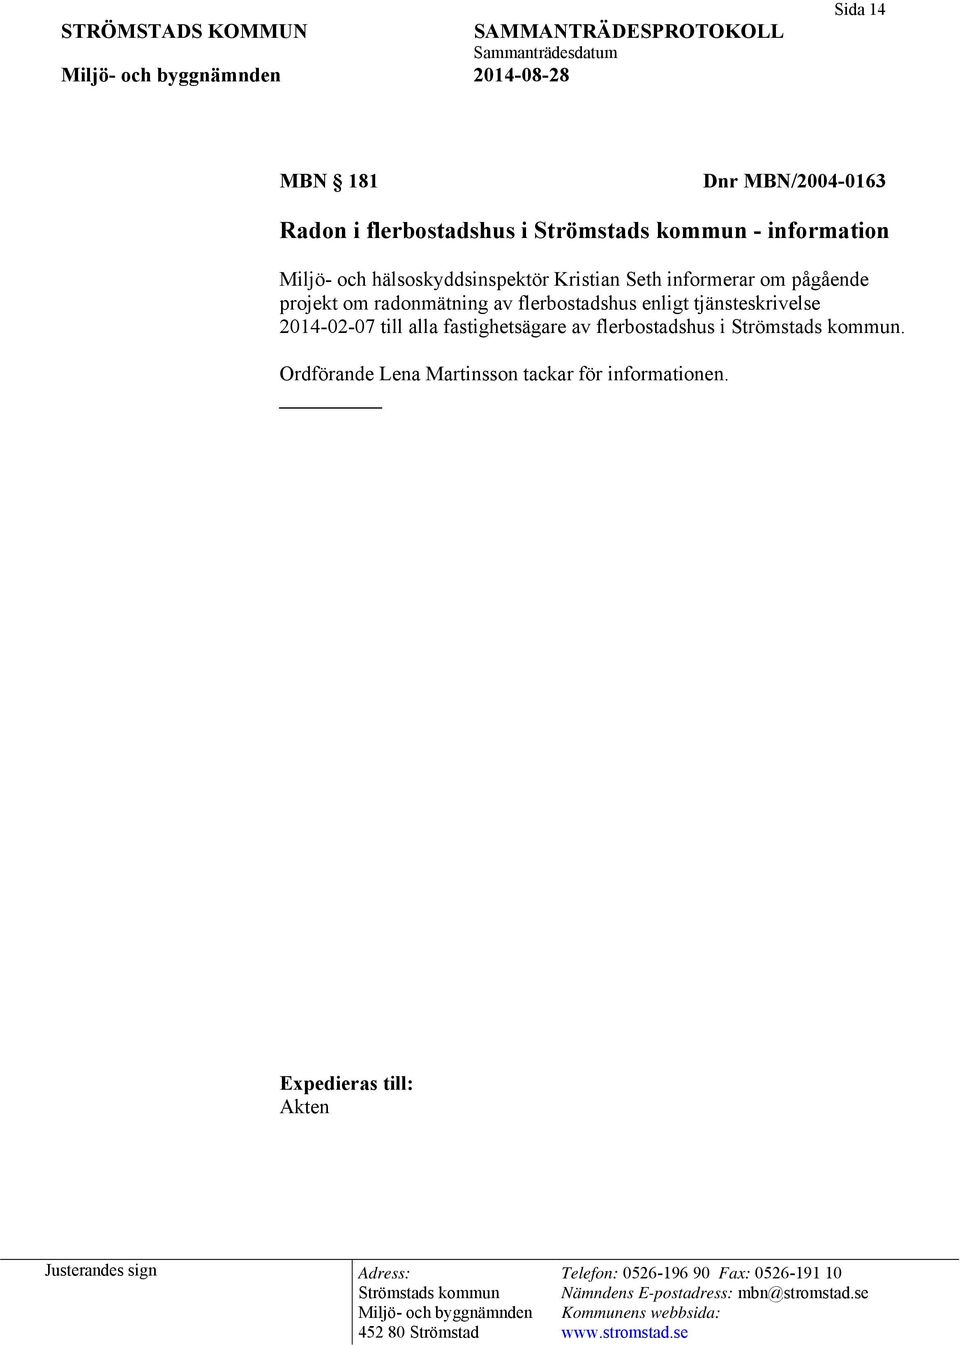 projekt om radonmätning av flerbostadshus enligt tjänsteskrivelse 2014-02-07 till